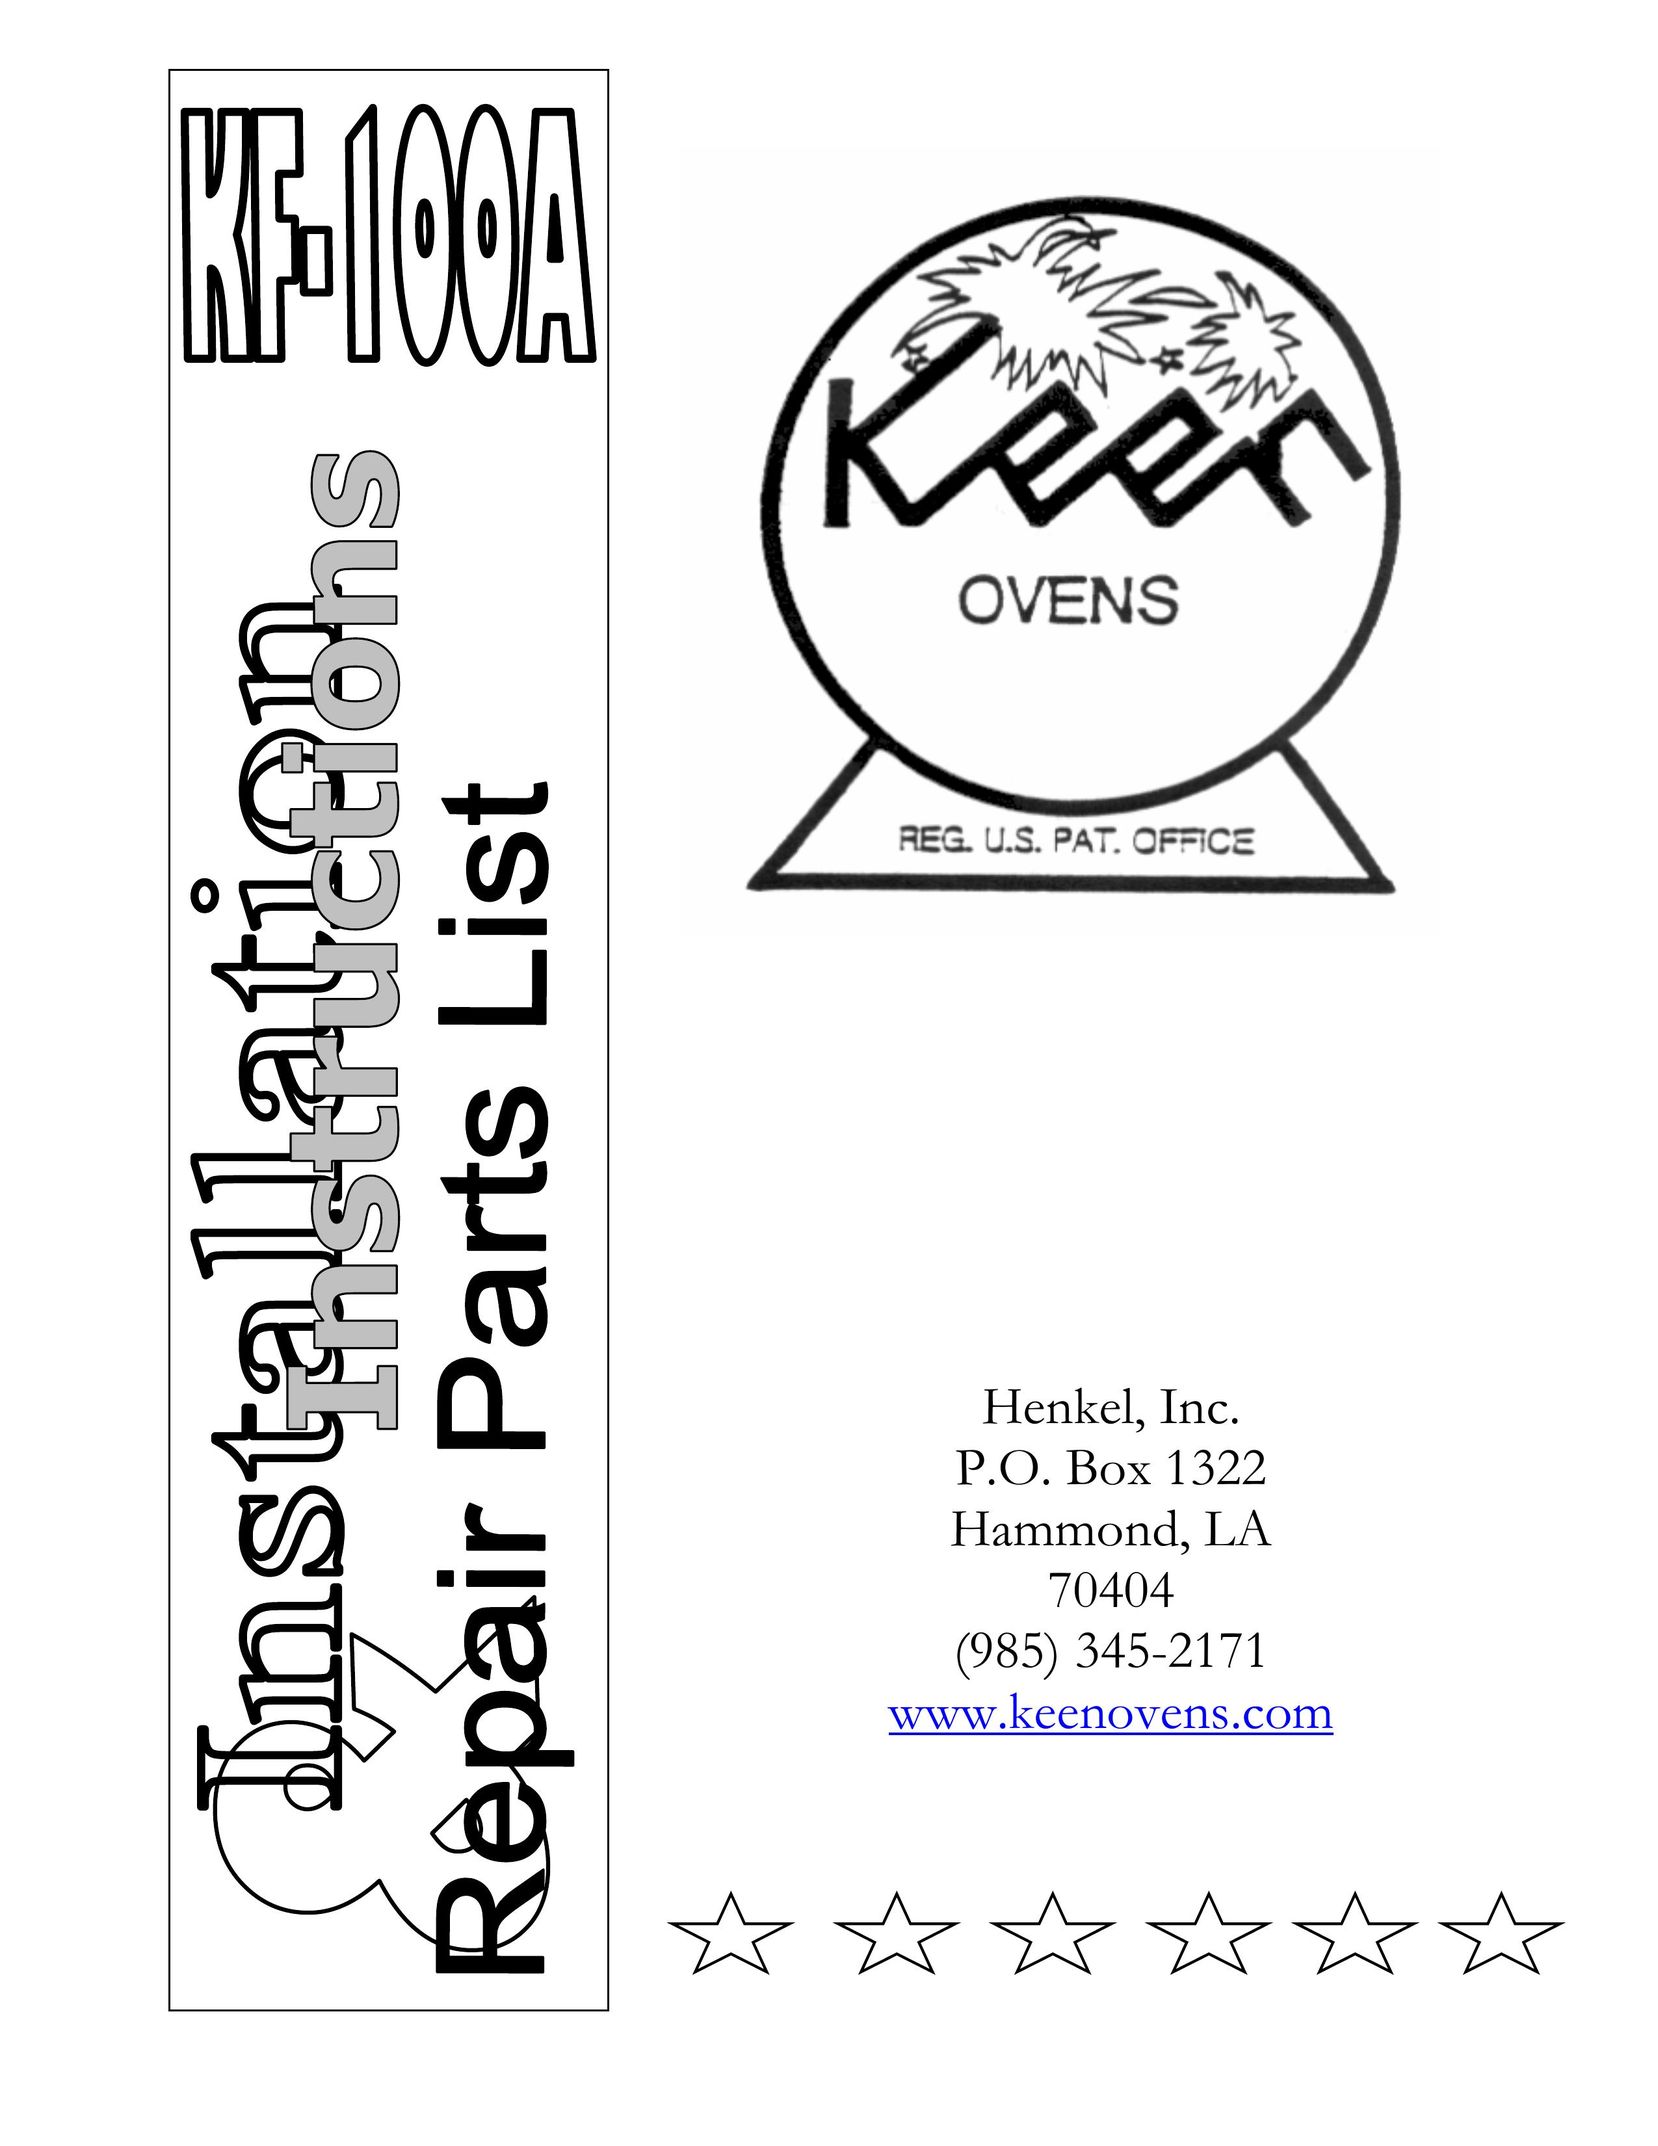 Henkel KF-100A Oven User Manual